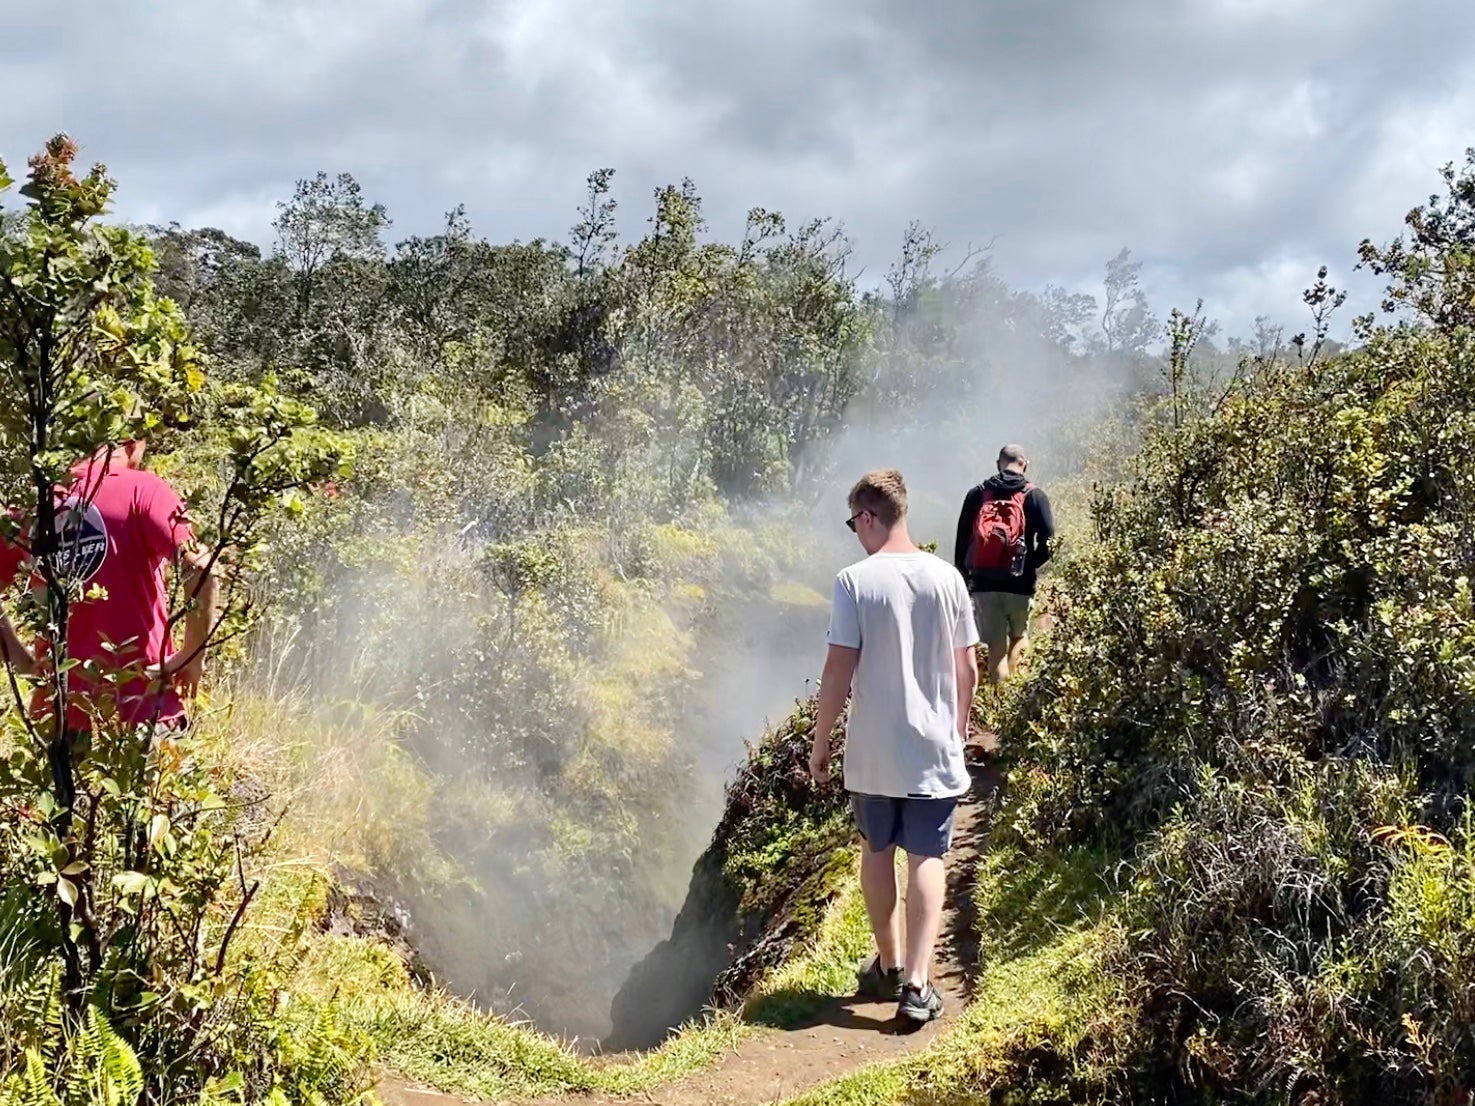 drumeții în apropierea craterului Kilauea de pe insula mare este exhilirating. (fotografie de 2DadsWithBaggage)